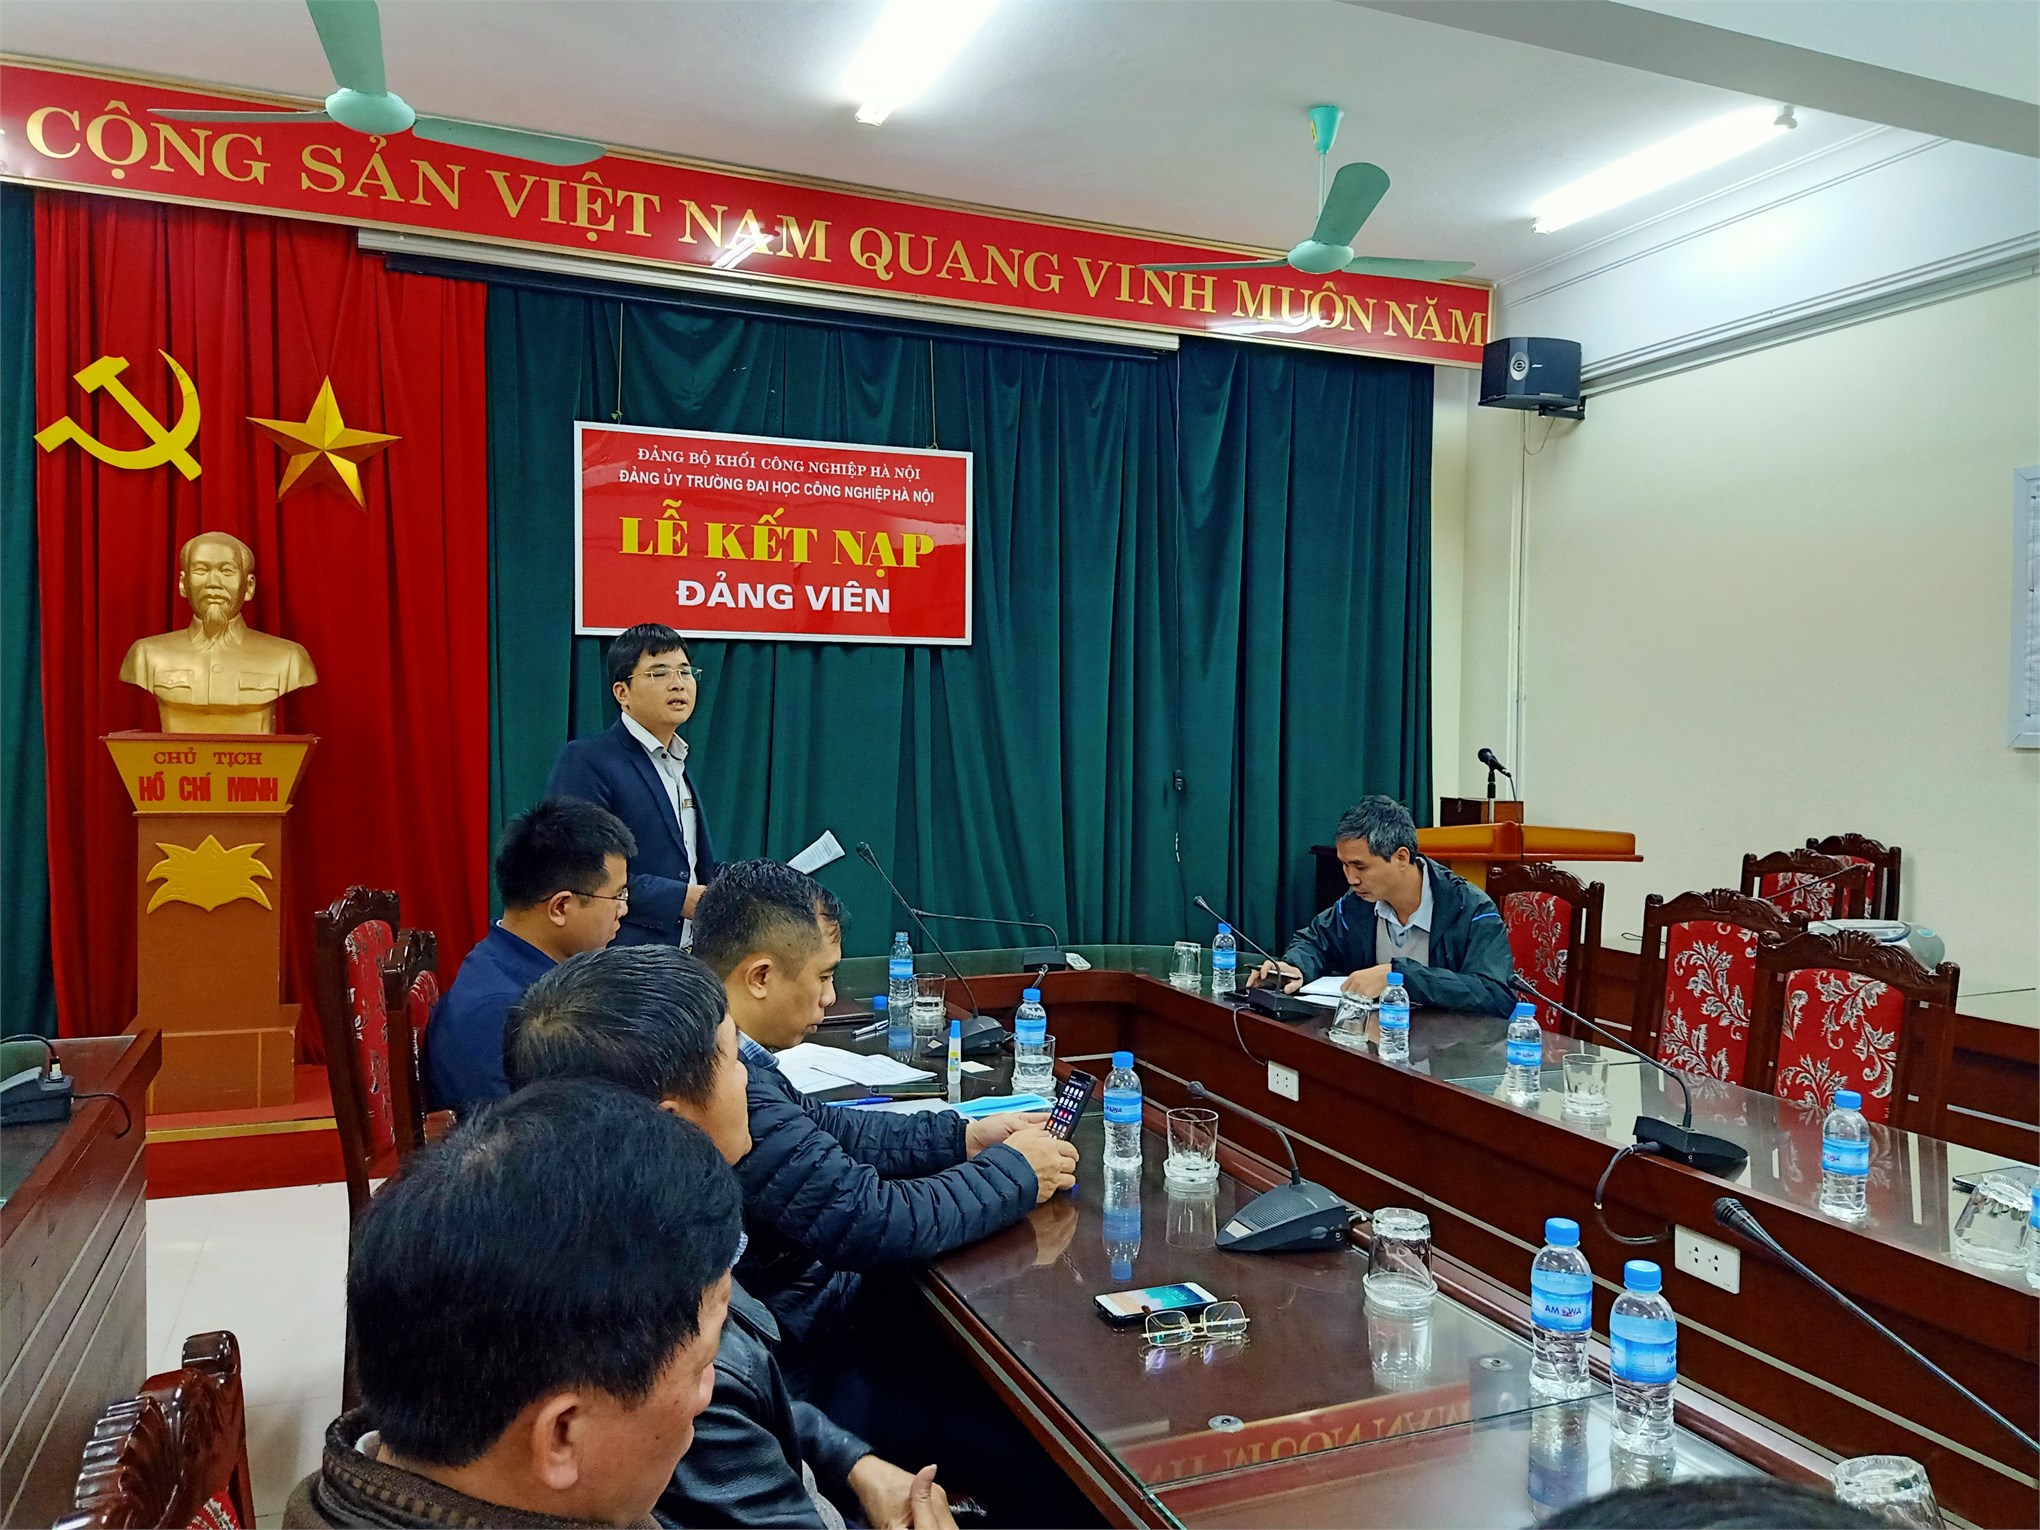 Trung tâm Việt Nhật tổ chức họp lấy phiếu tín nhiệm đối với cá nhân đề nghị xét tặng danh hiệu NGUT năm 2020